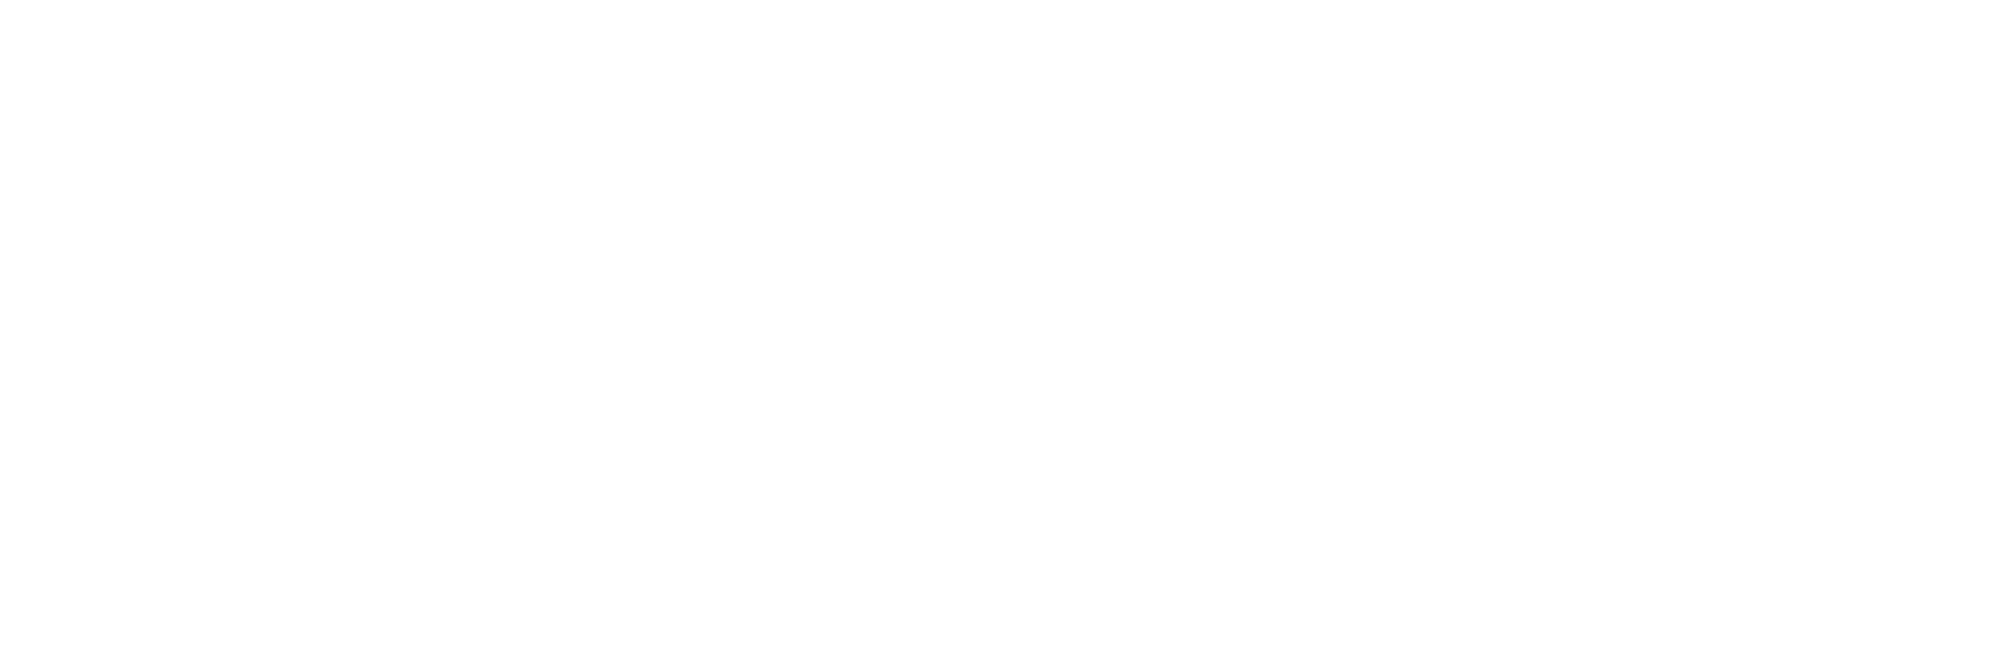 Bitgo - Logo